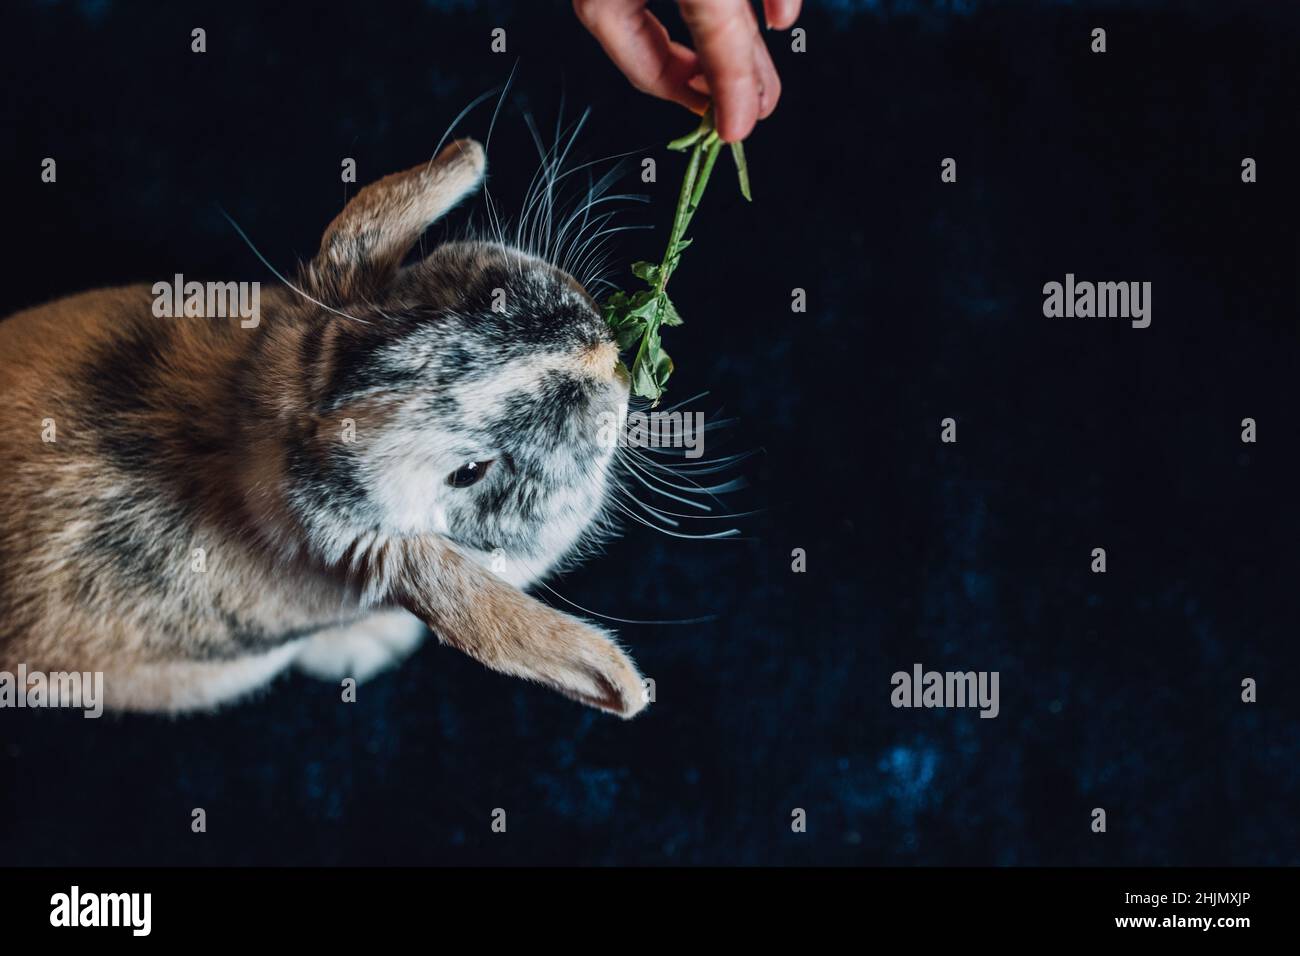 domestic bunny rabbit eating nibbling on radish tops Stock Photo